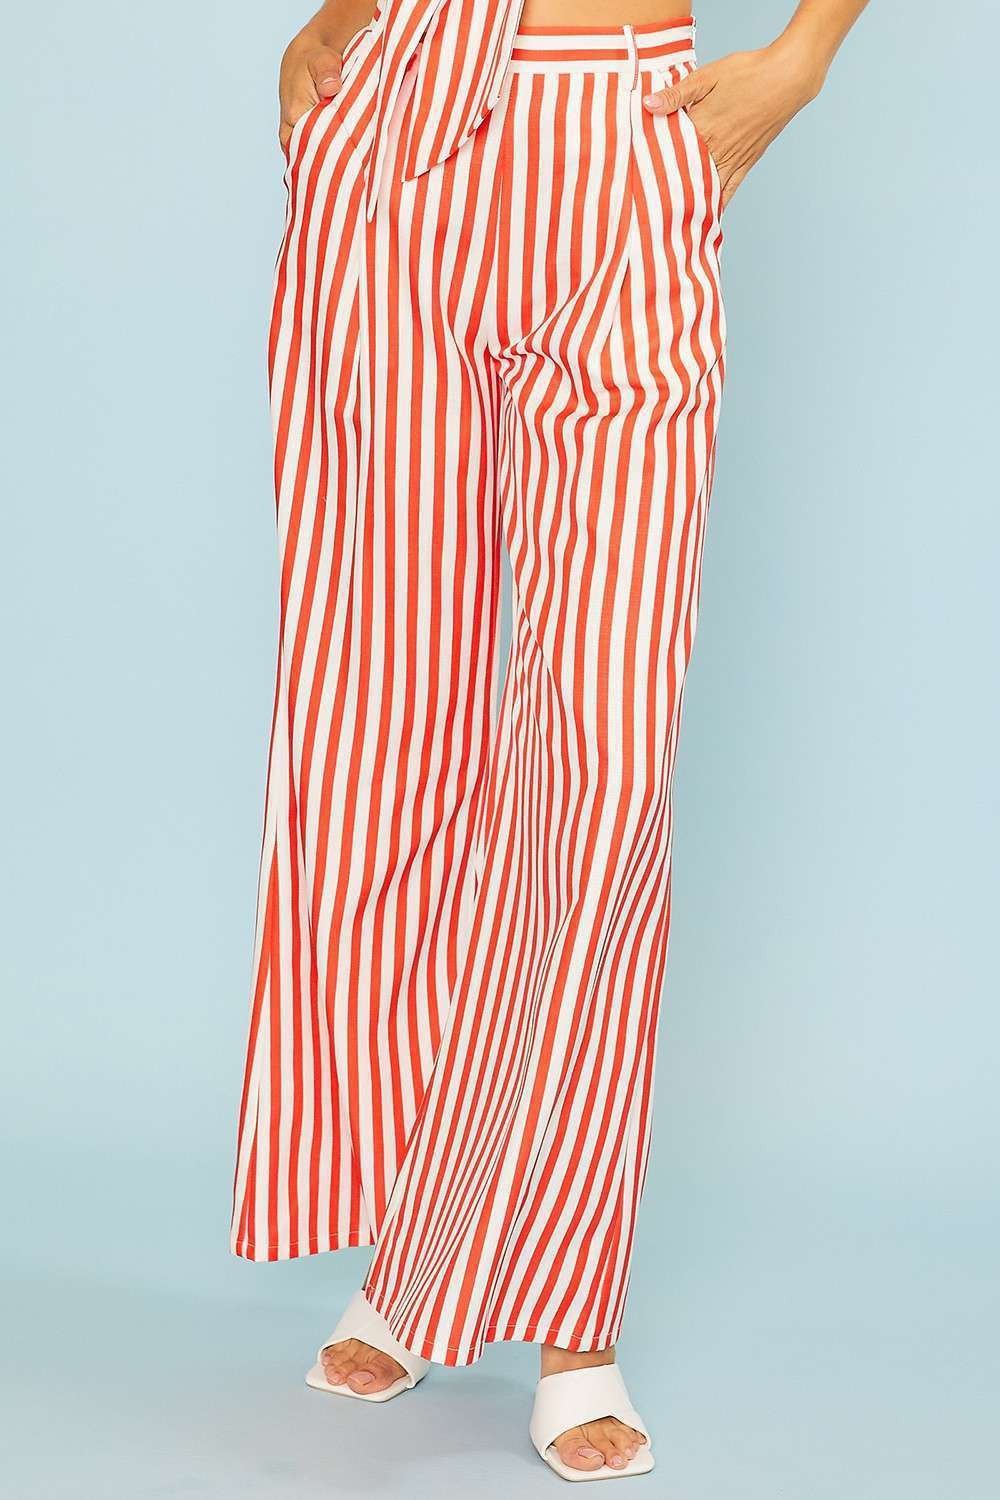 pantalones anchos con rayas verticales